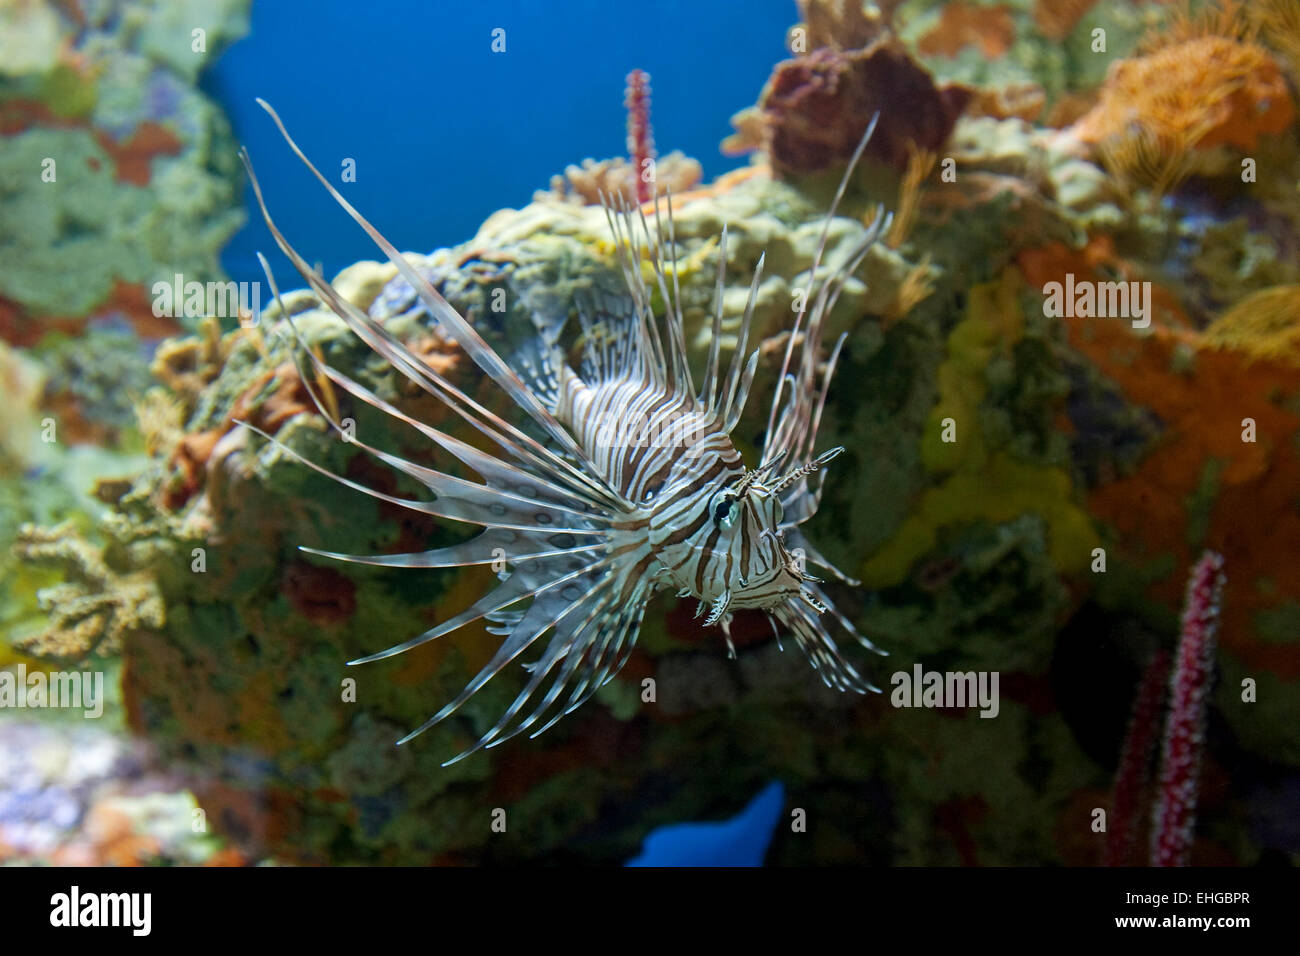 Venomous Lionfish in aquarium, Pterois Stock Photo